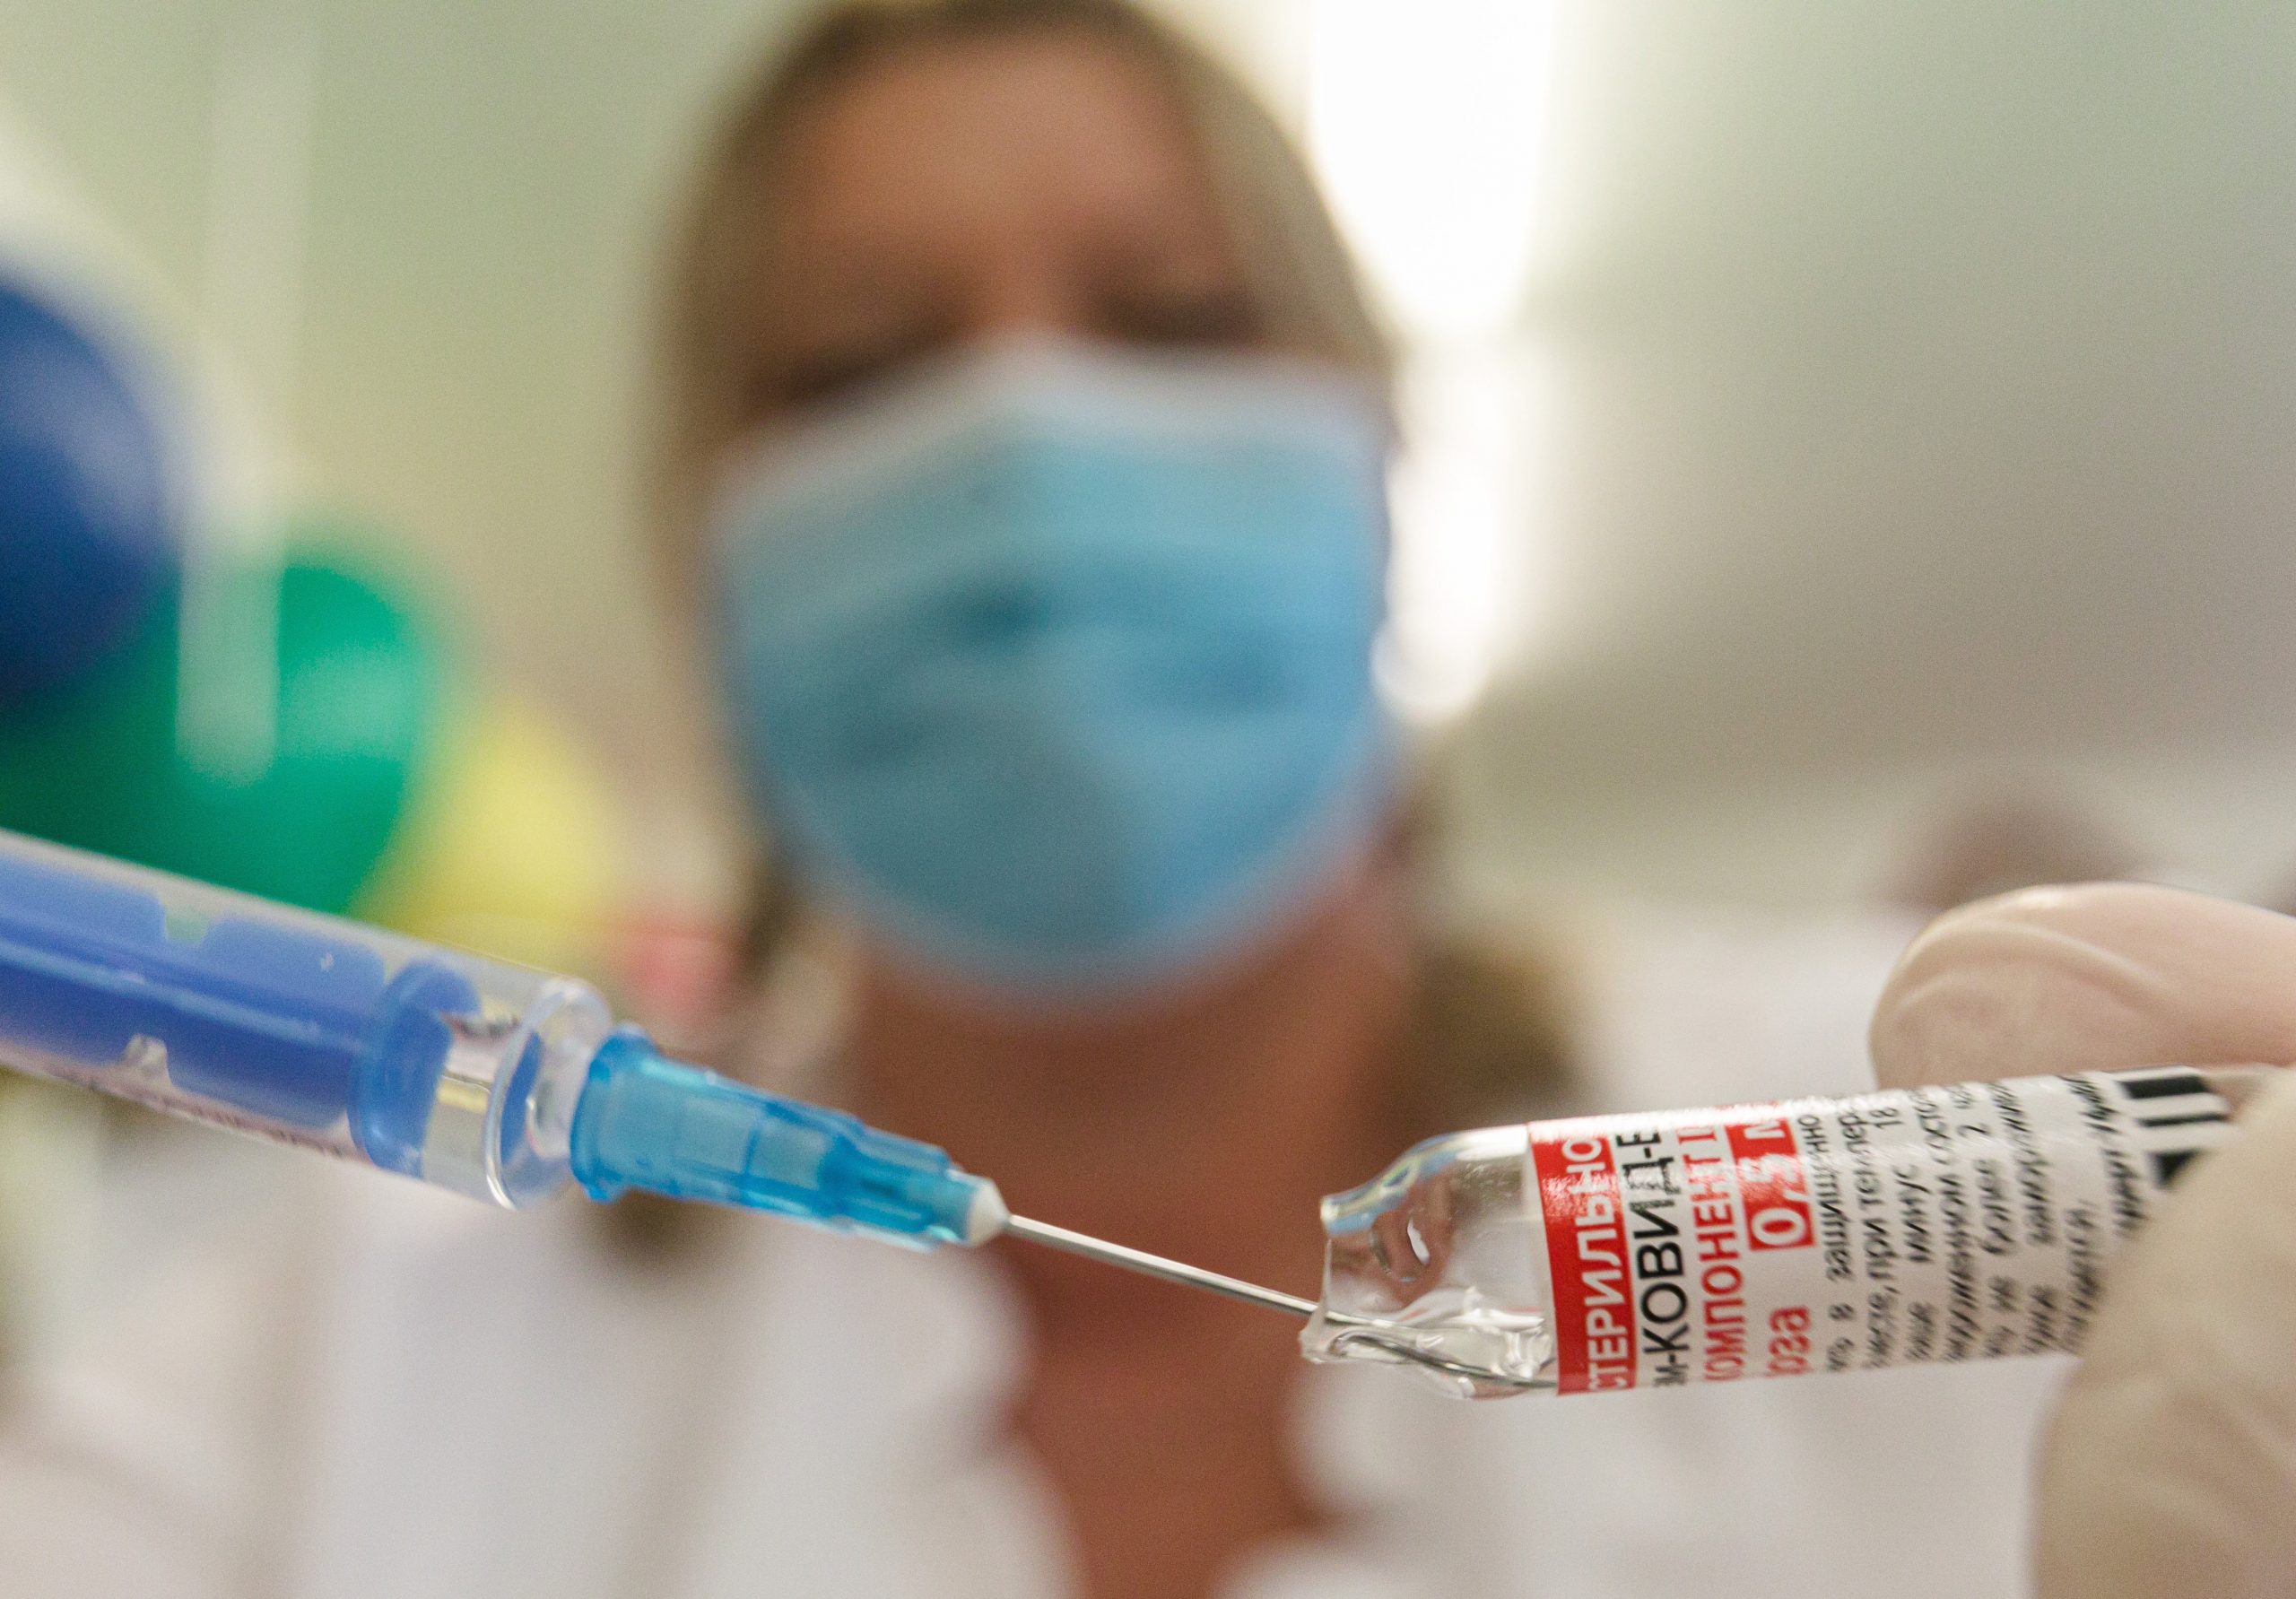 Regierung will Corona-Impfung mit Online-Reservierungssystem beschleunigen